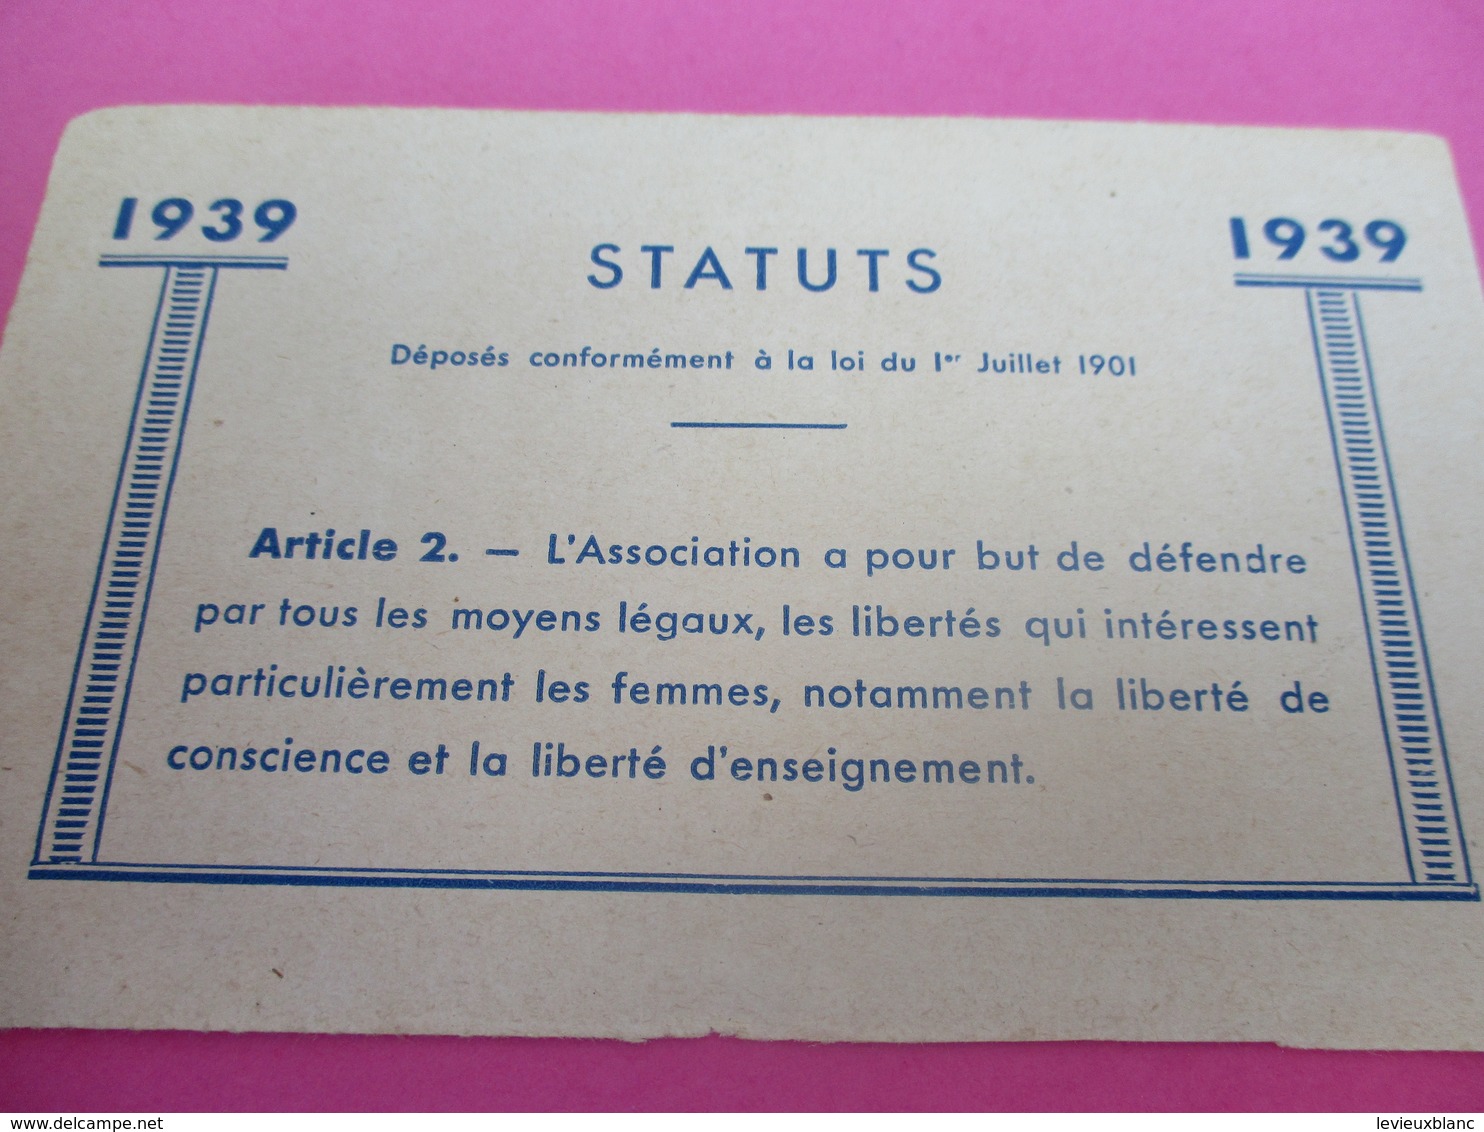 Carte D'Association/Ligue Féminine D'Action Catholique Française/ Lanore/ SONNEVILLE/ Charente/ /1939     CAN755 - Religione & Esoterismo